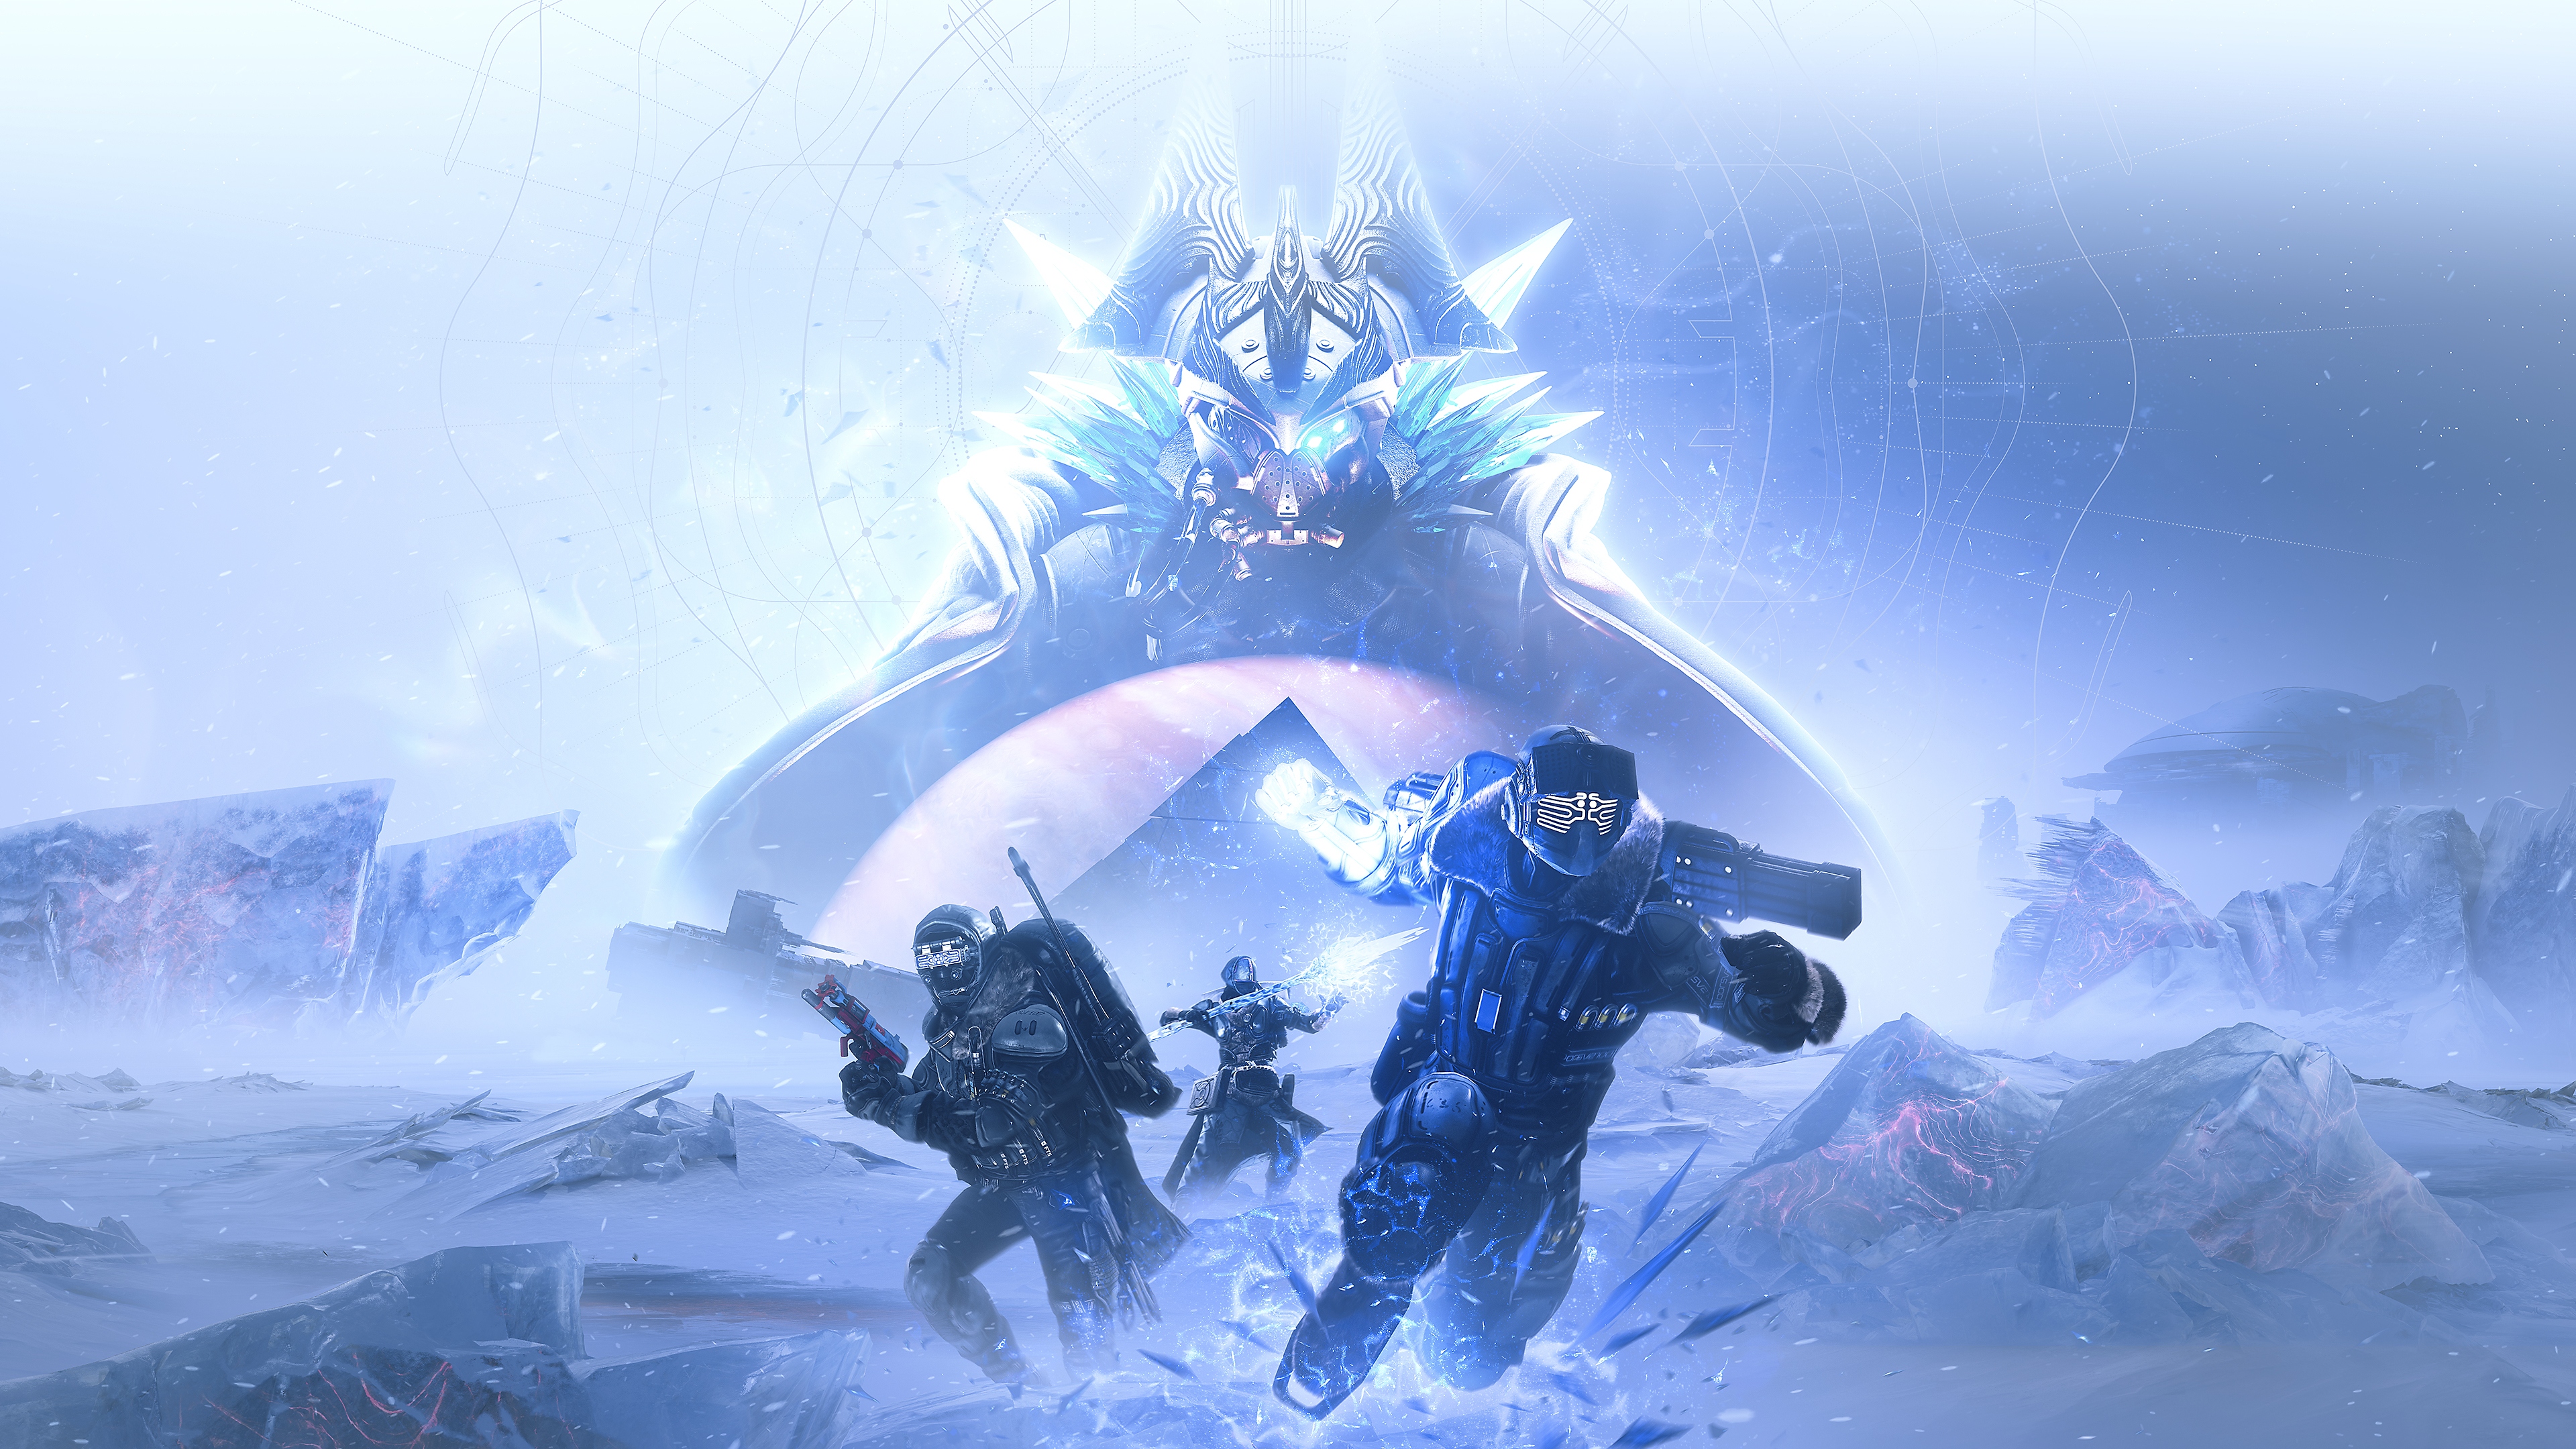 Destiny 2 - Beyond Light-billede af Eramis, Fallen Kell of Darkness